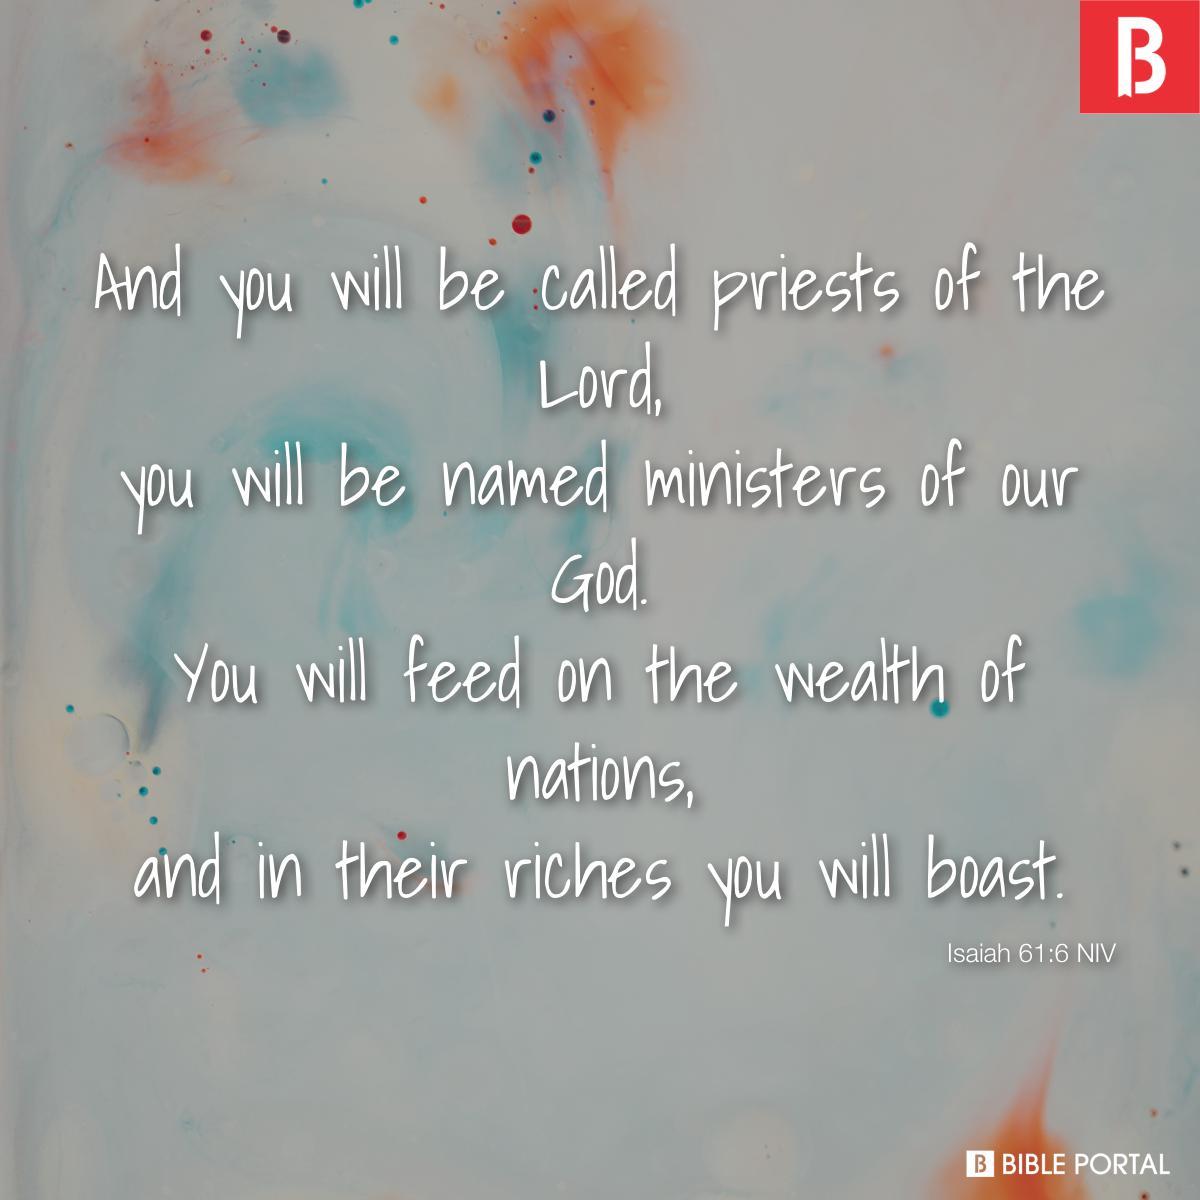 Isaiah 61:6 NIV